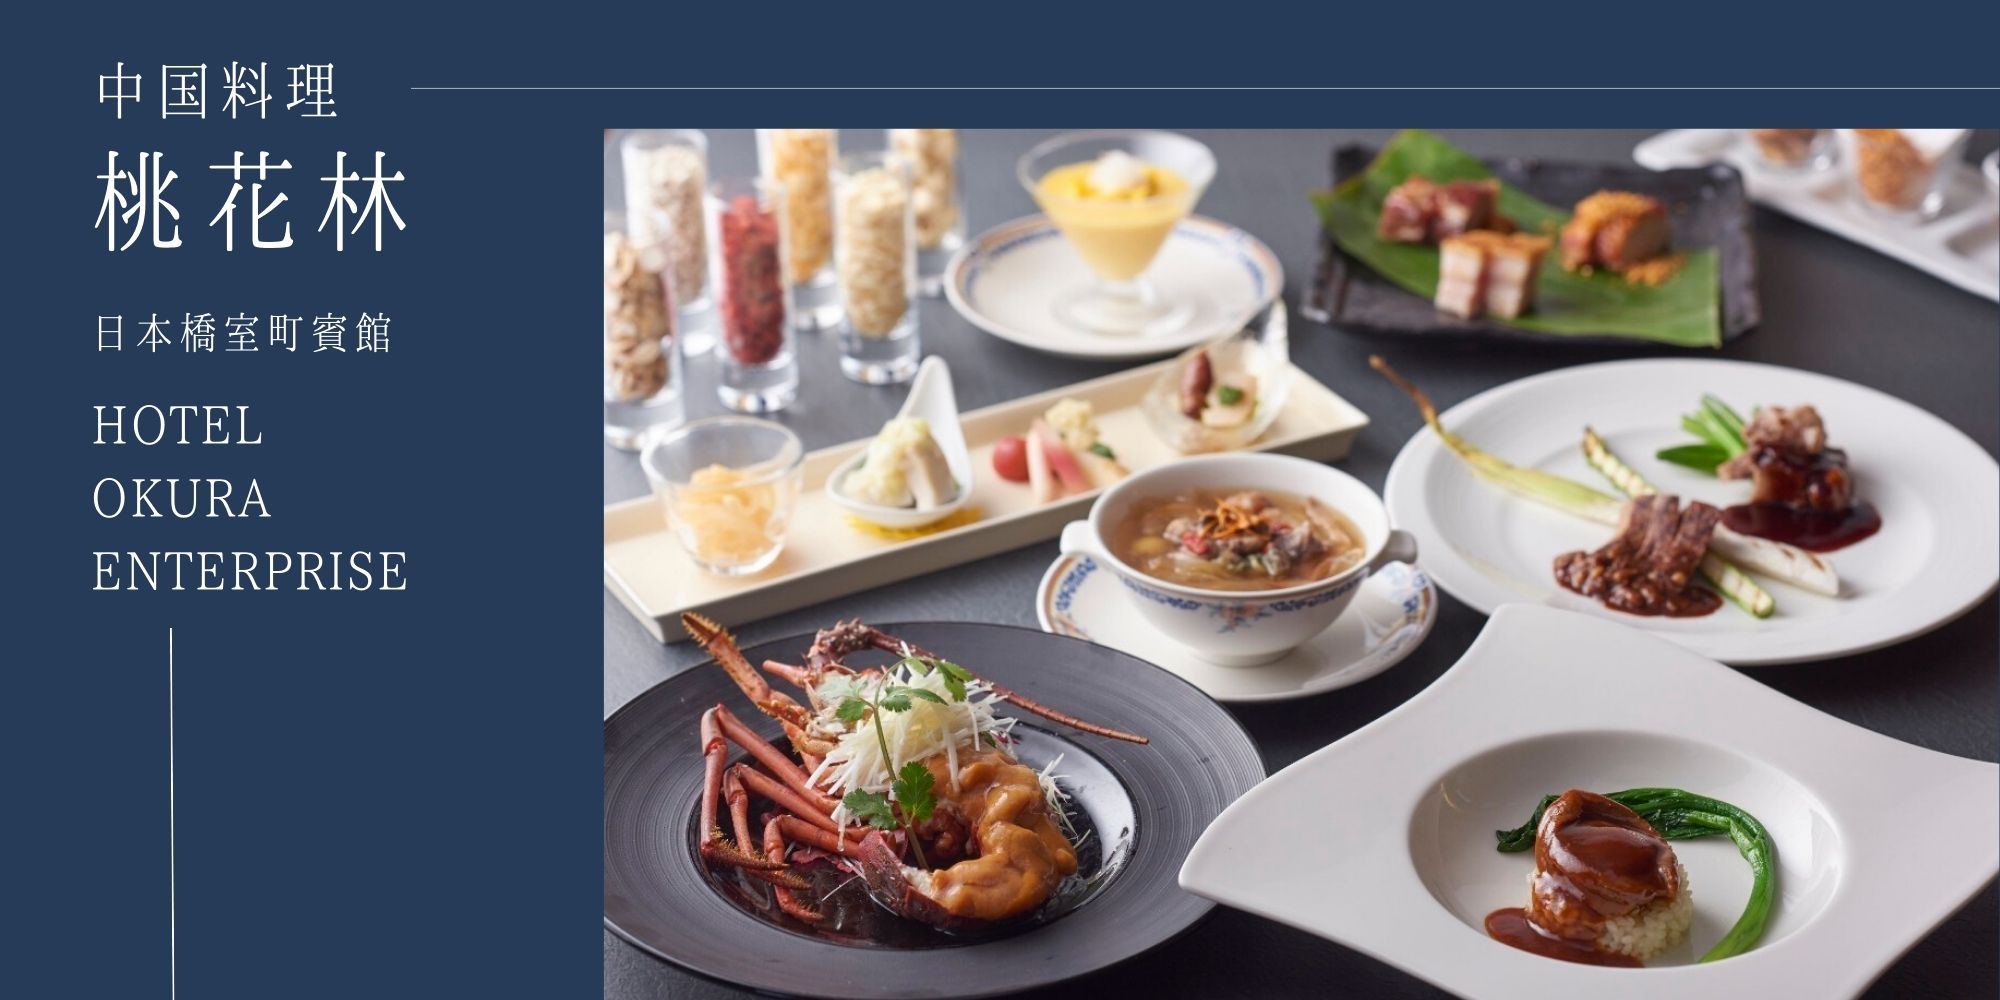 公式 ホテルオークラレストラン 桃花林 日本橋室町賓館 正統派広東料理を堪能できる中華料理レストラン